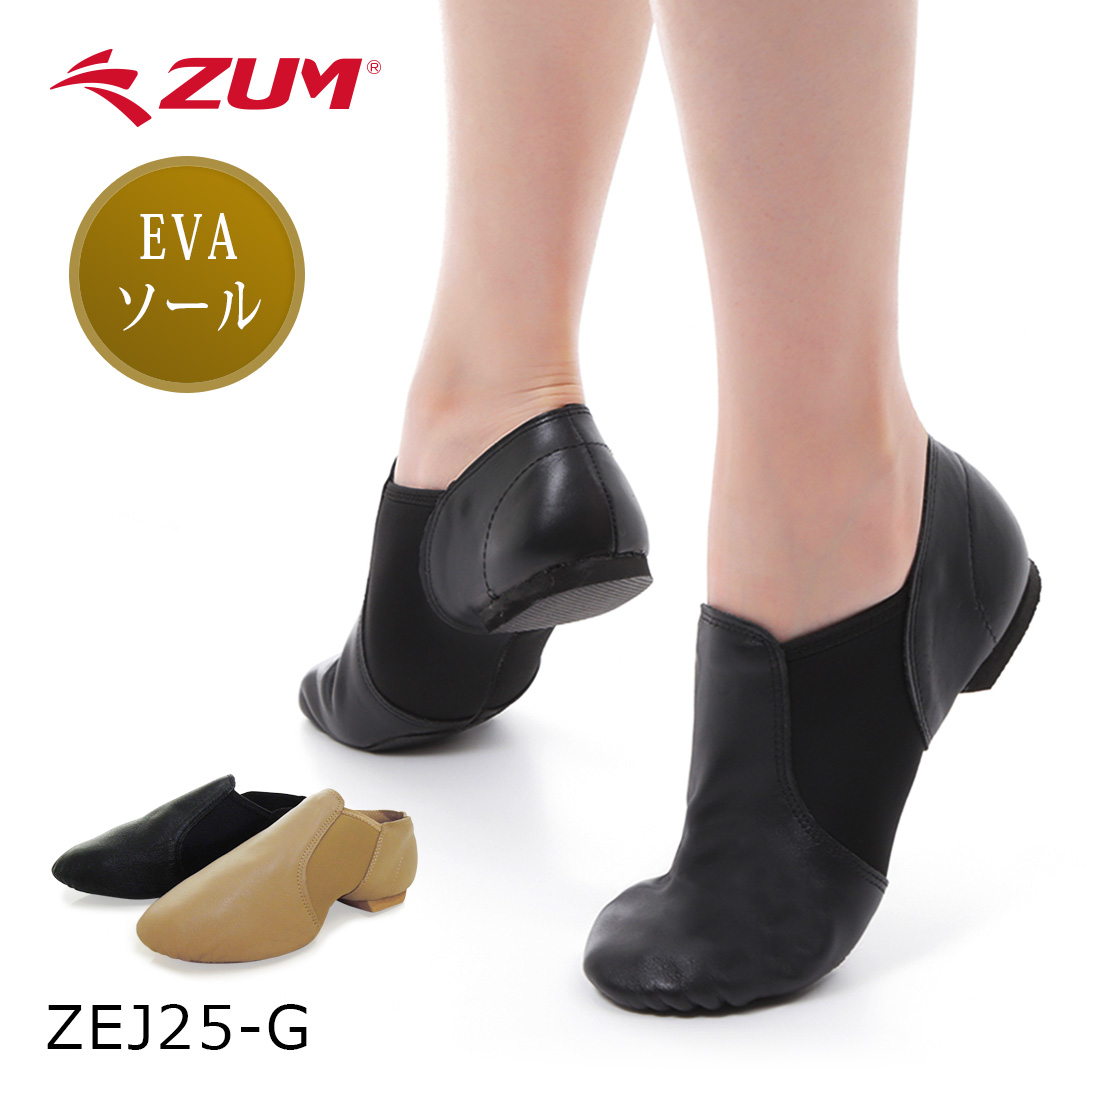  телячья кожа джазовая обувь туфли без застежки со вставкой из резинки резина подошва EVA ZUM ZEJ25-G